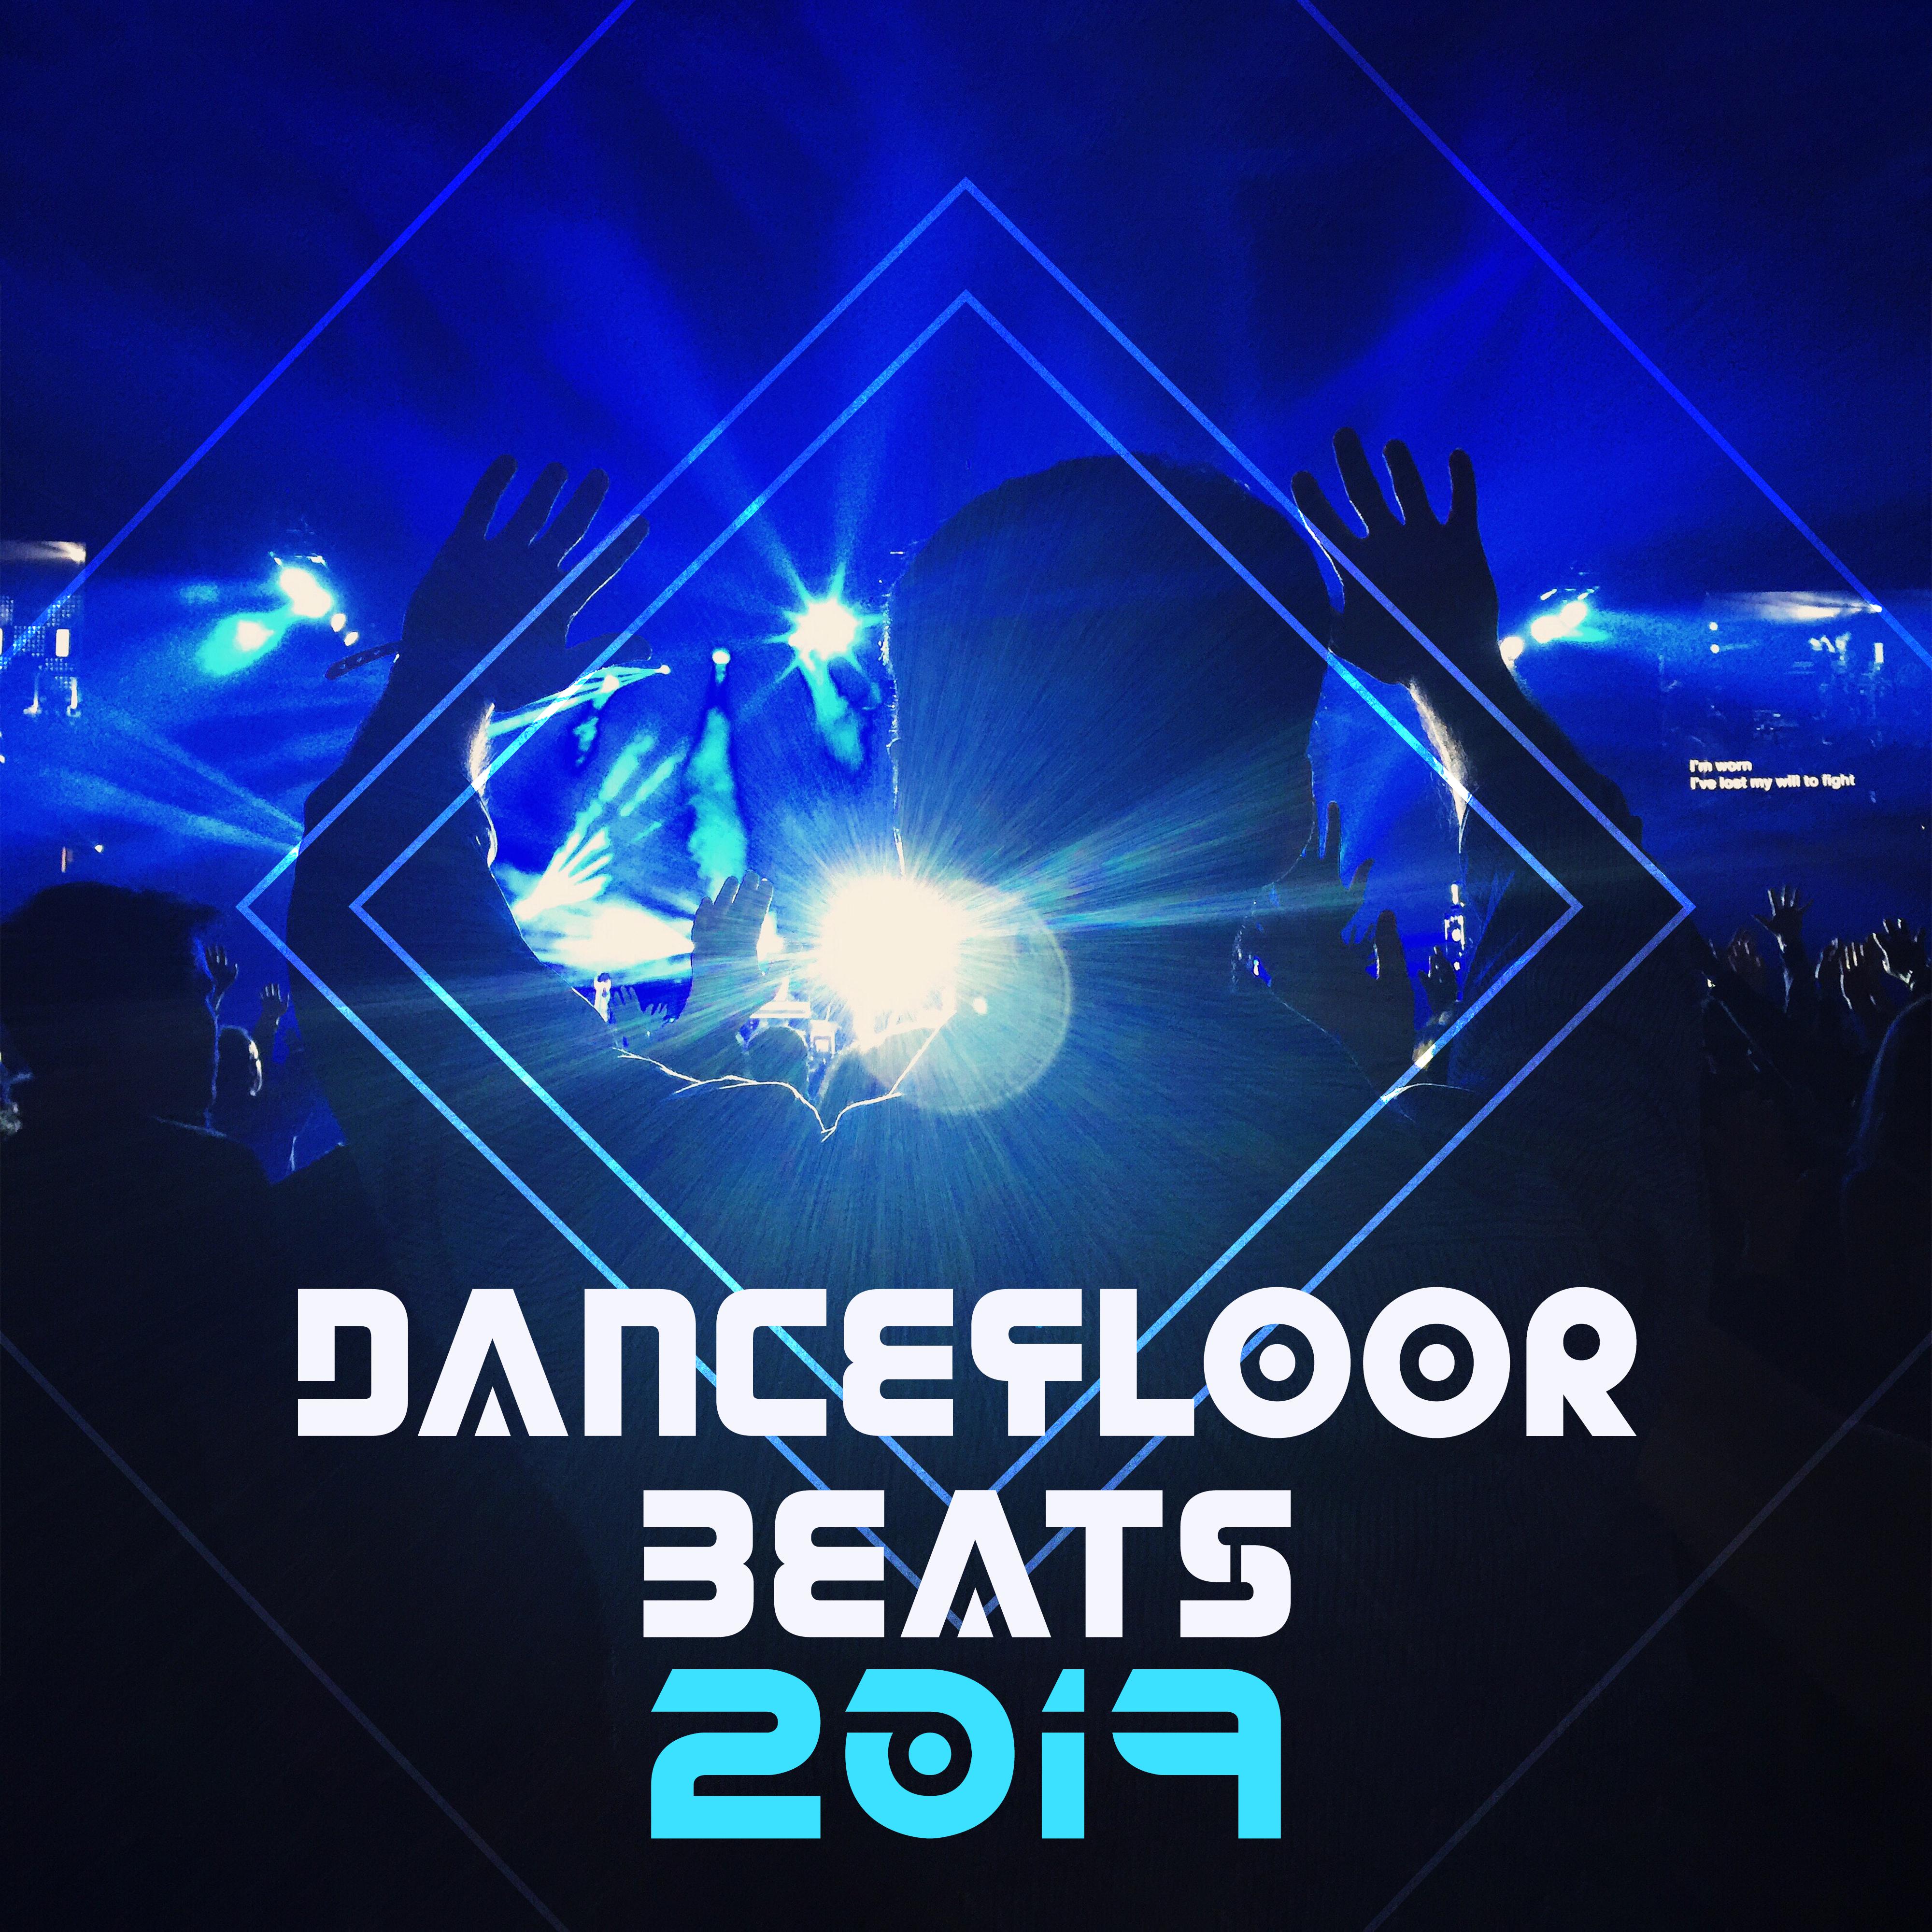 Dancefloor Beats 2019